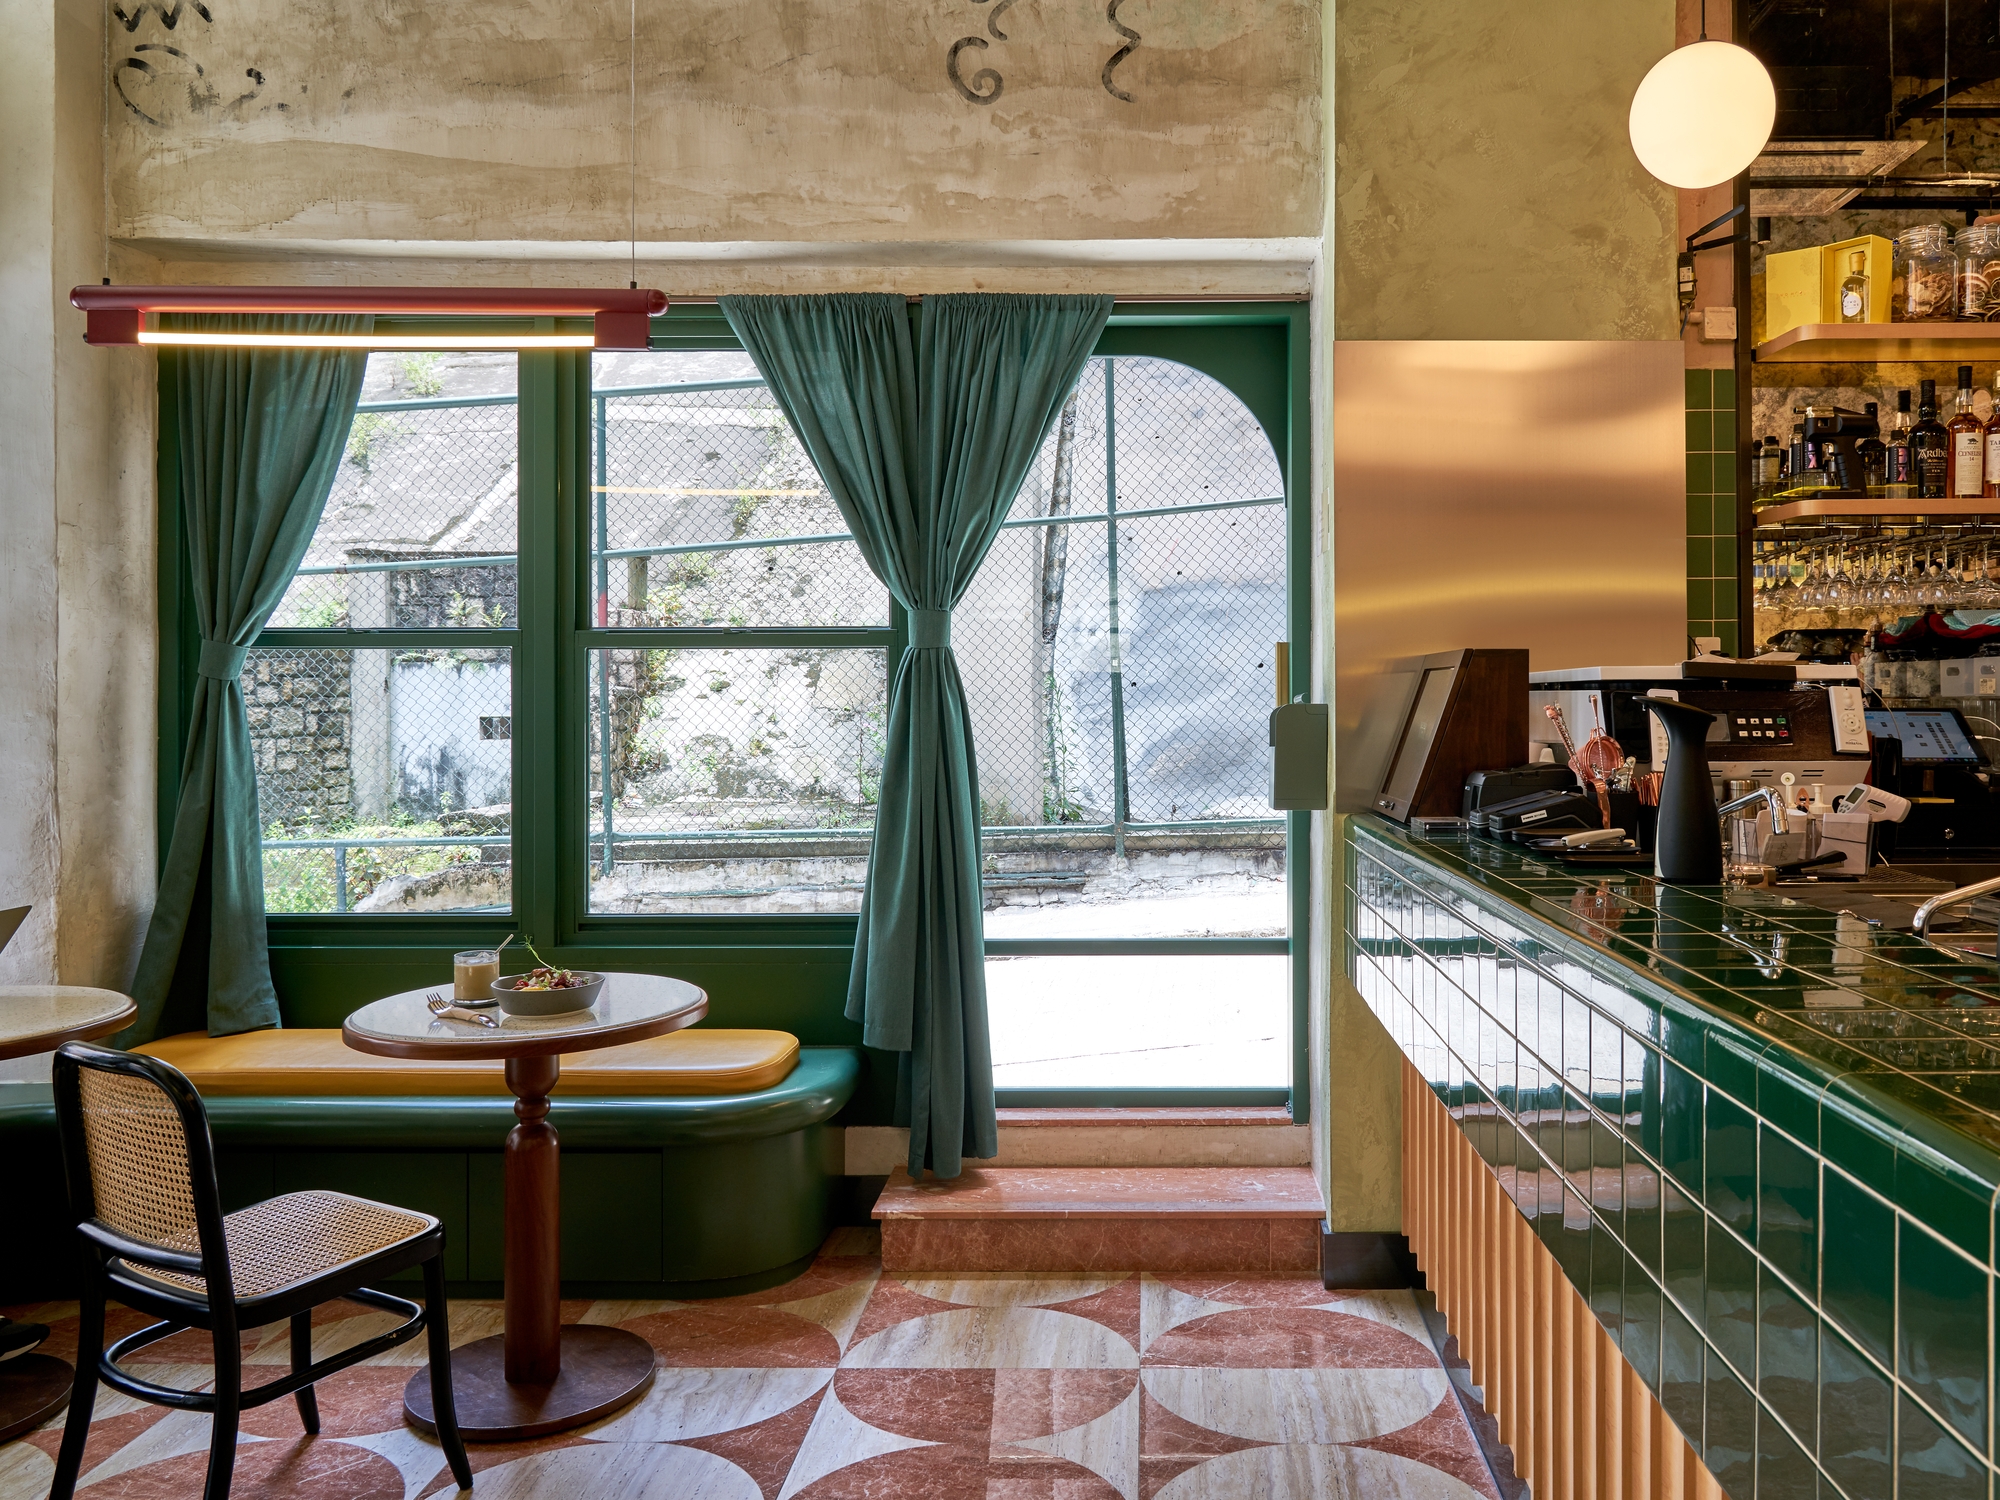 图片[5]|Coffeelin咖啡馆和酒吧|ART-Arrakis | 建筑室内设计的创新与灵感